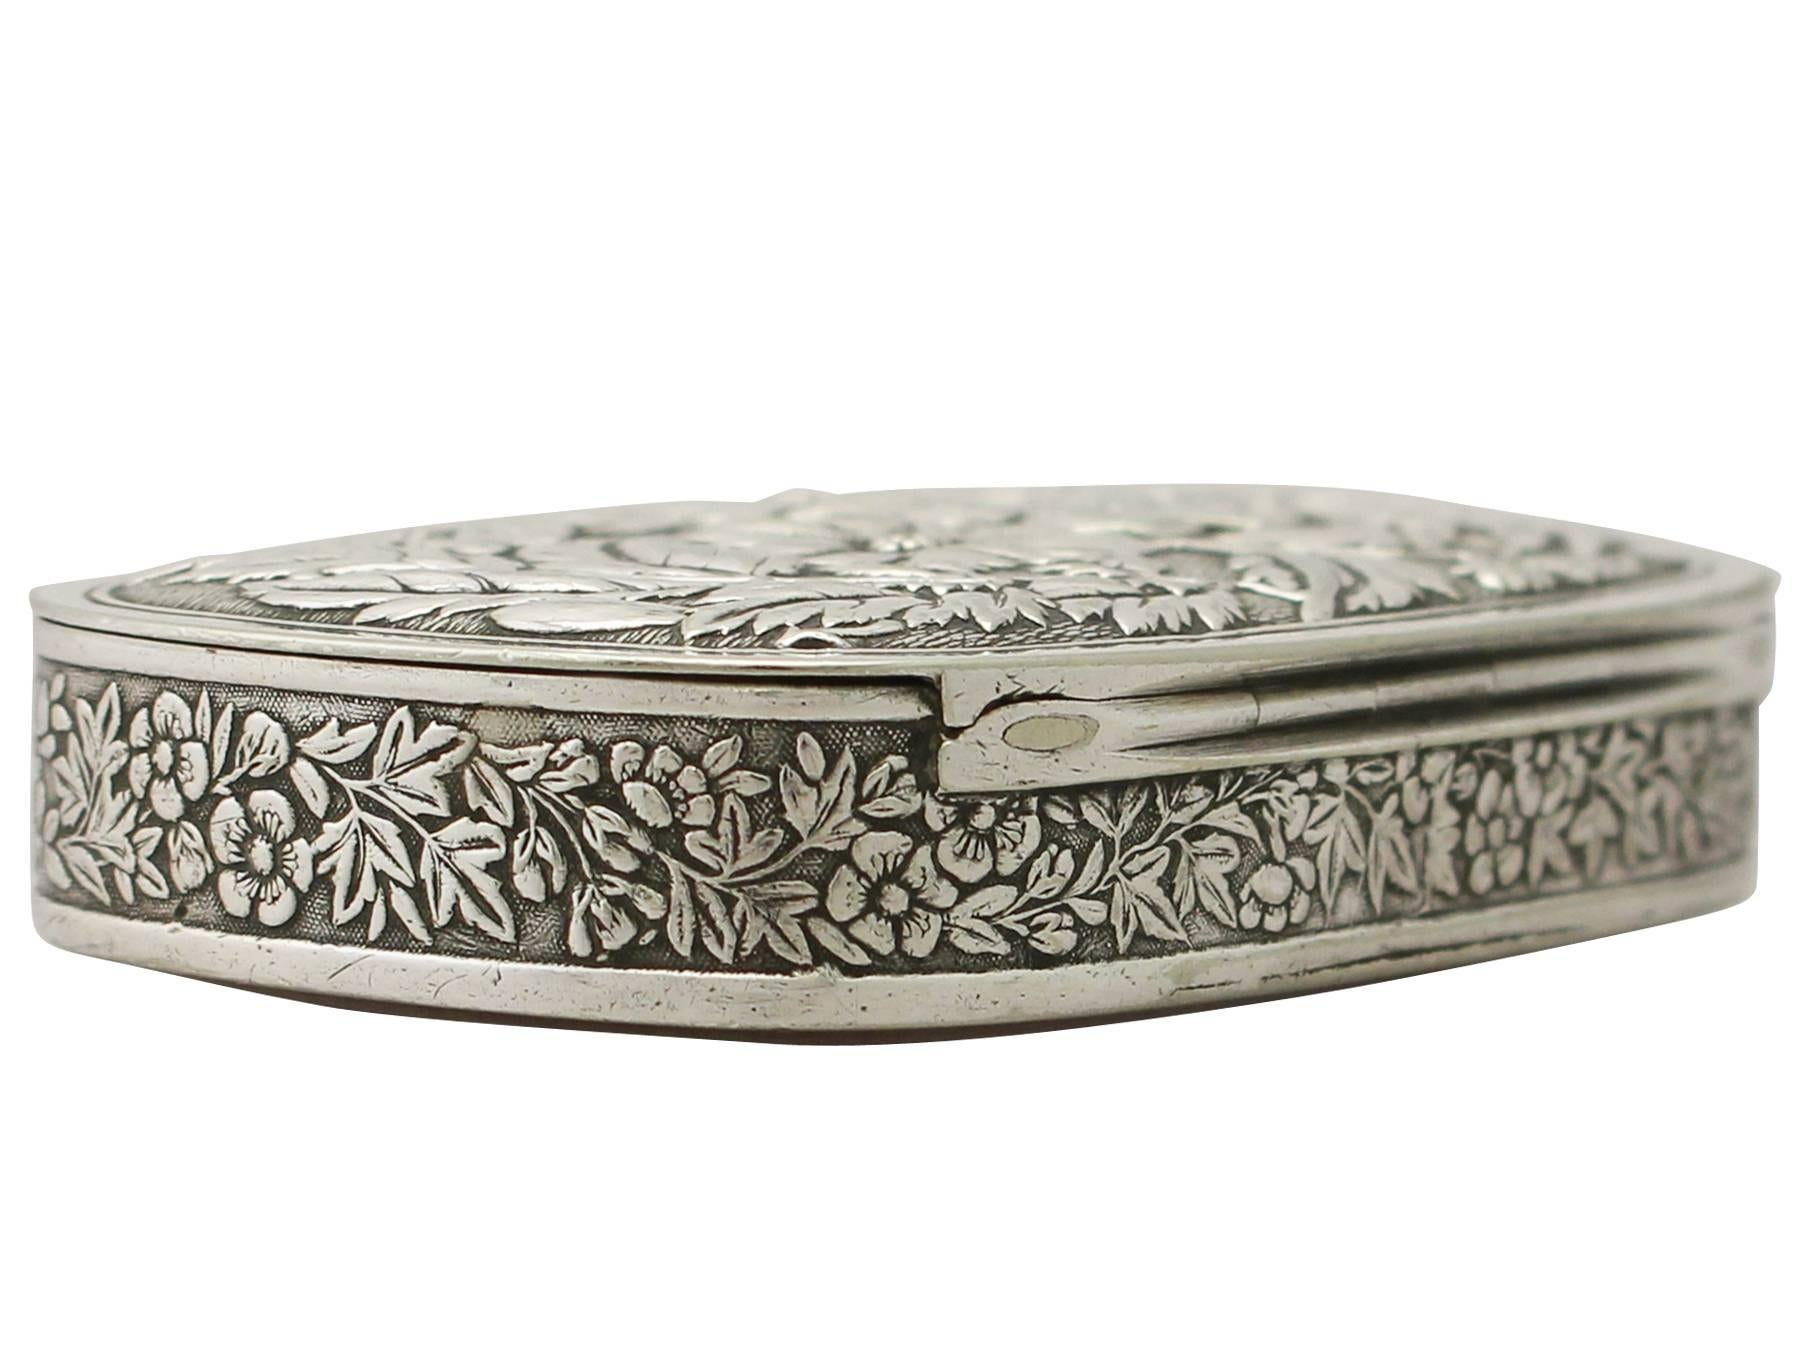 Late 19th Century American Sterling Silver Snuff Box Antique, circa 1880